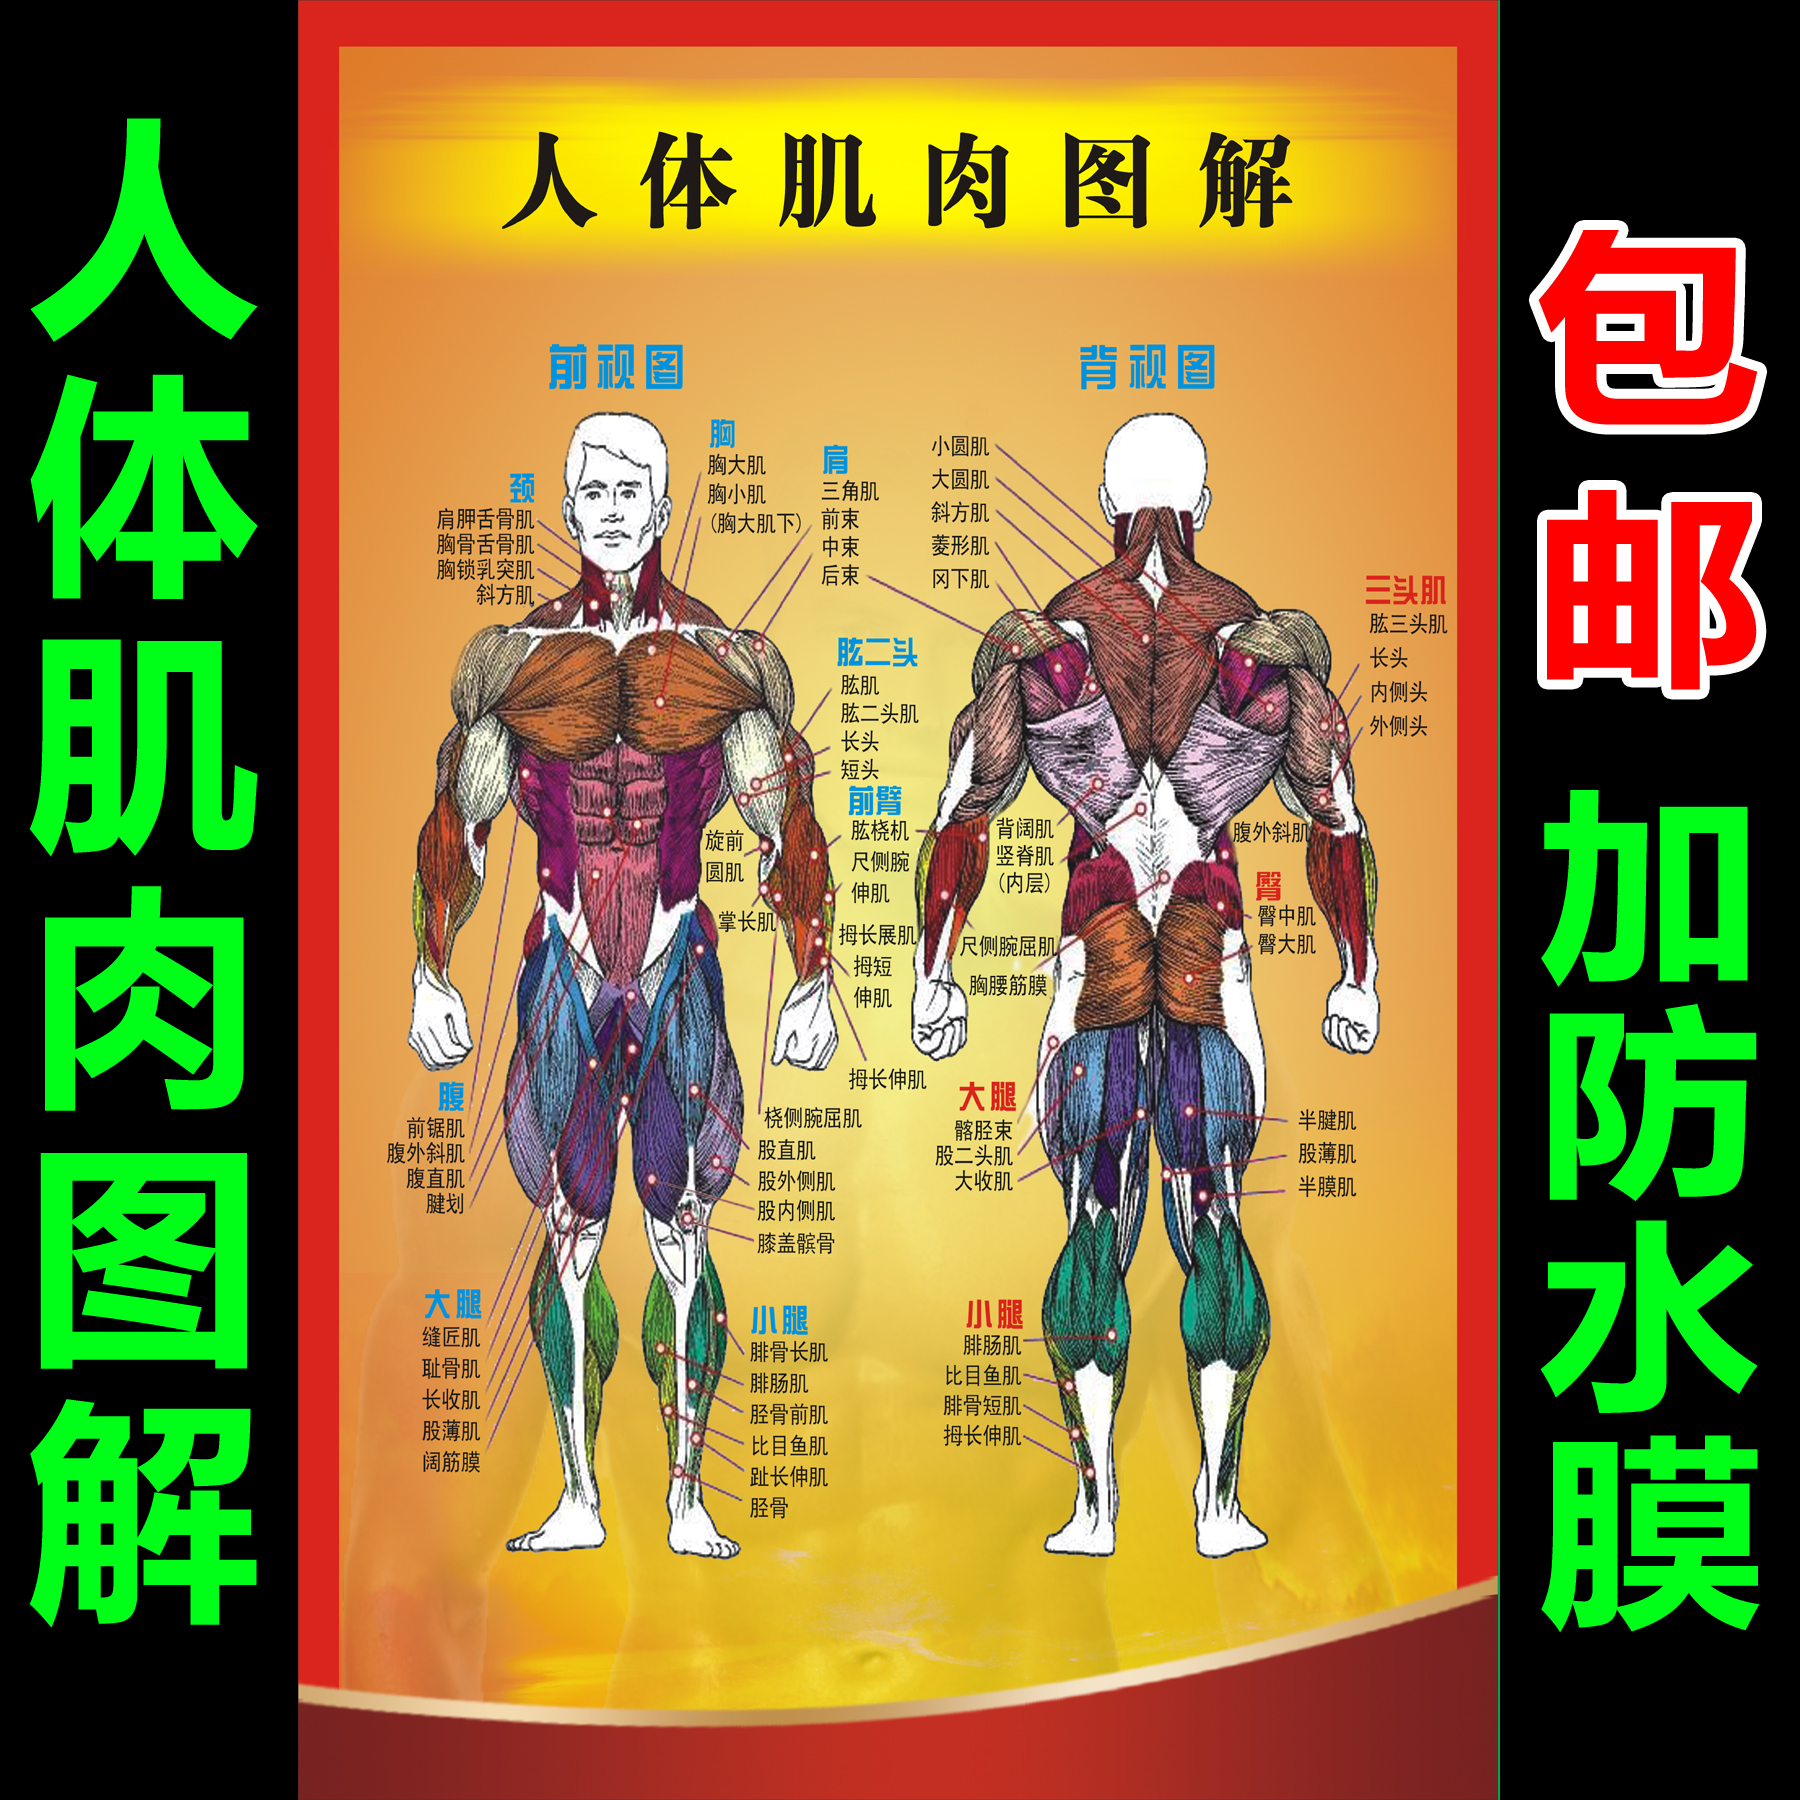 人体肌肉图解 肌肉结构解剖大挂图 器官解剖图海报定制广告贴纸